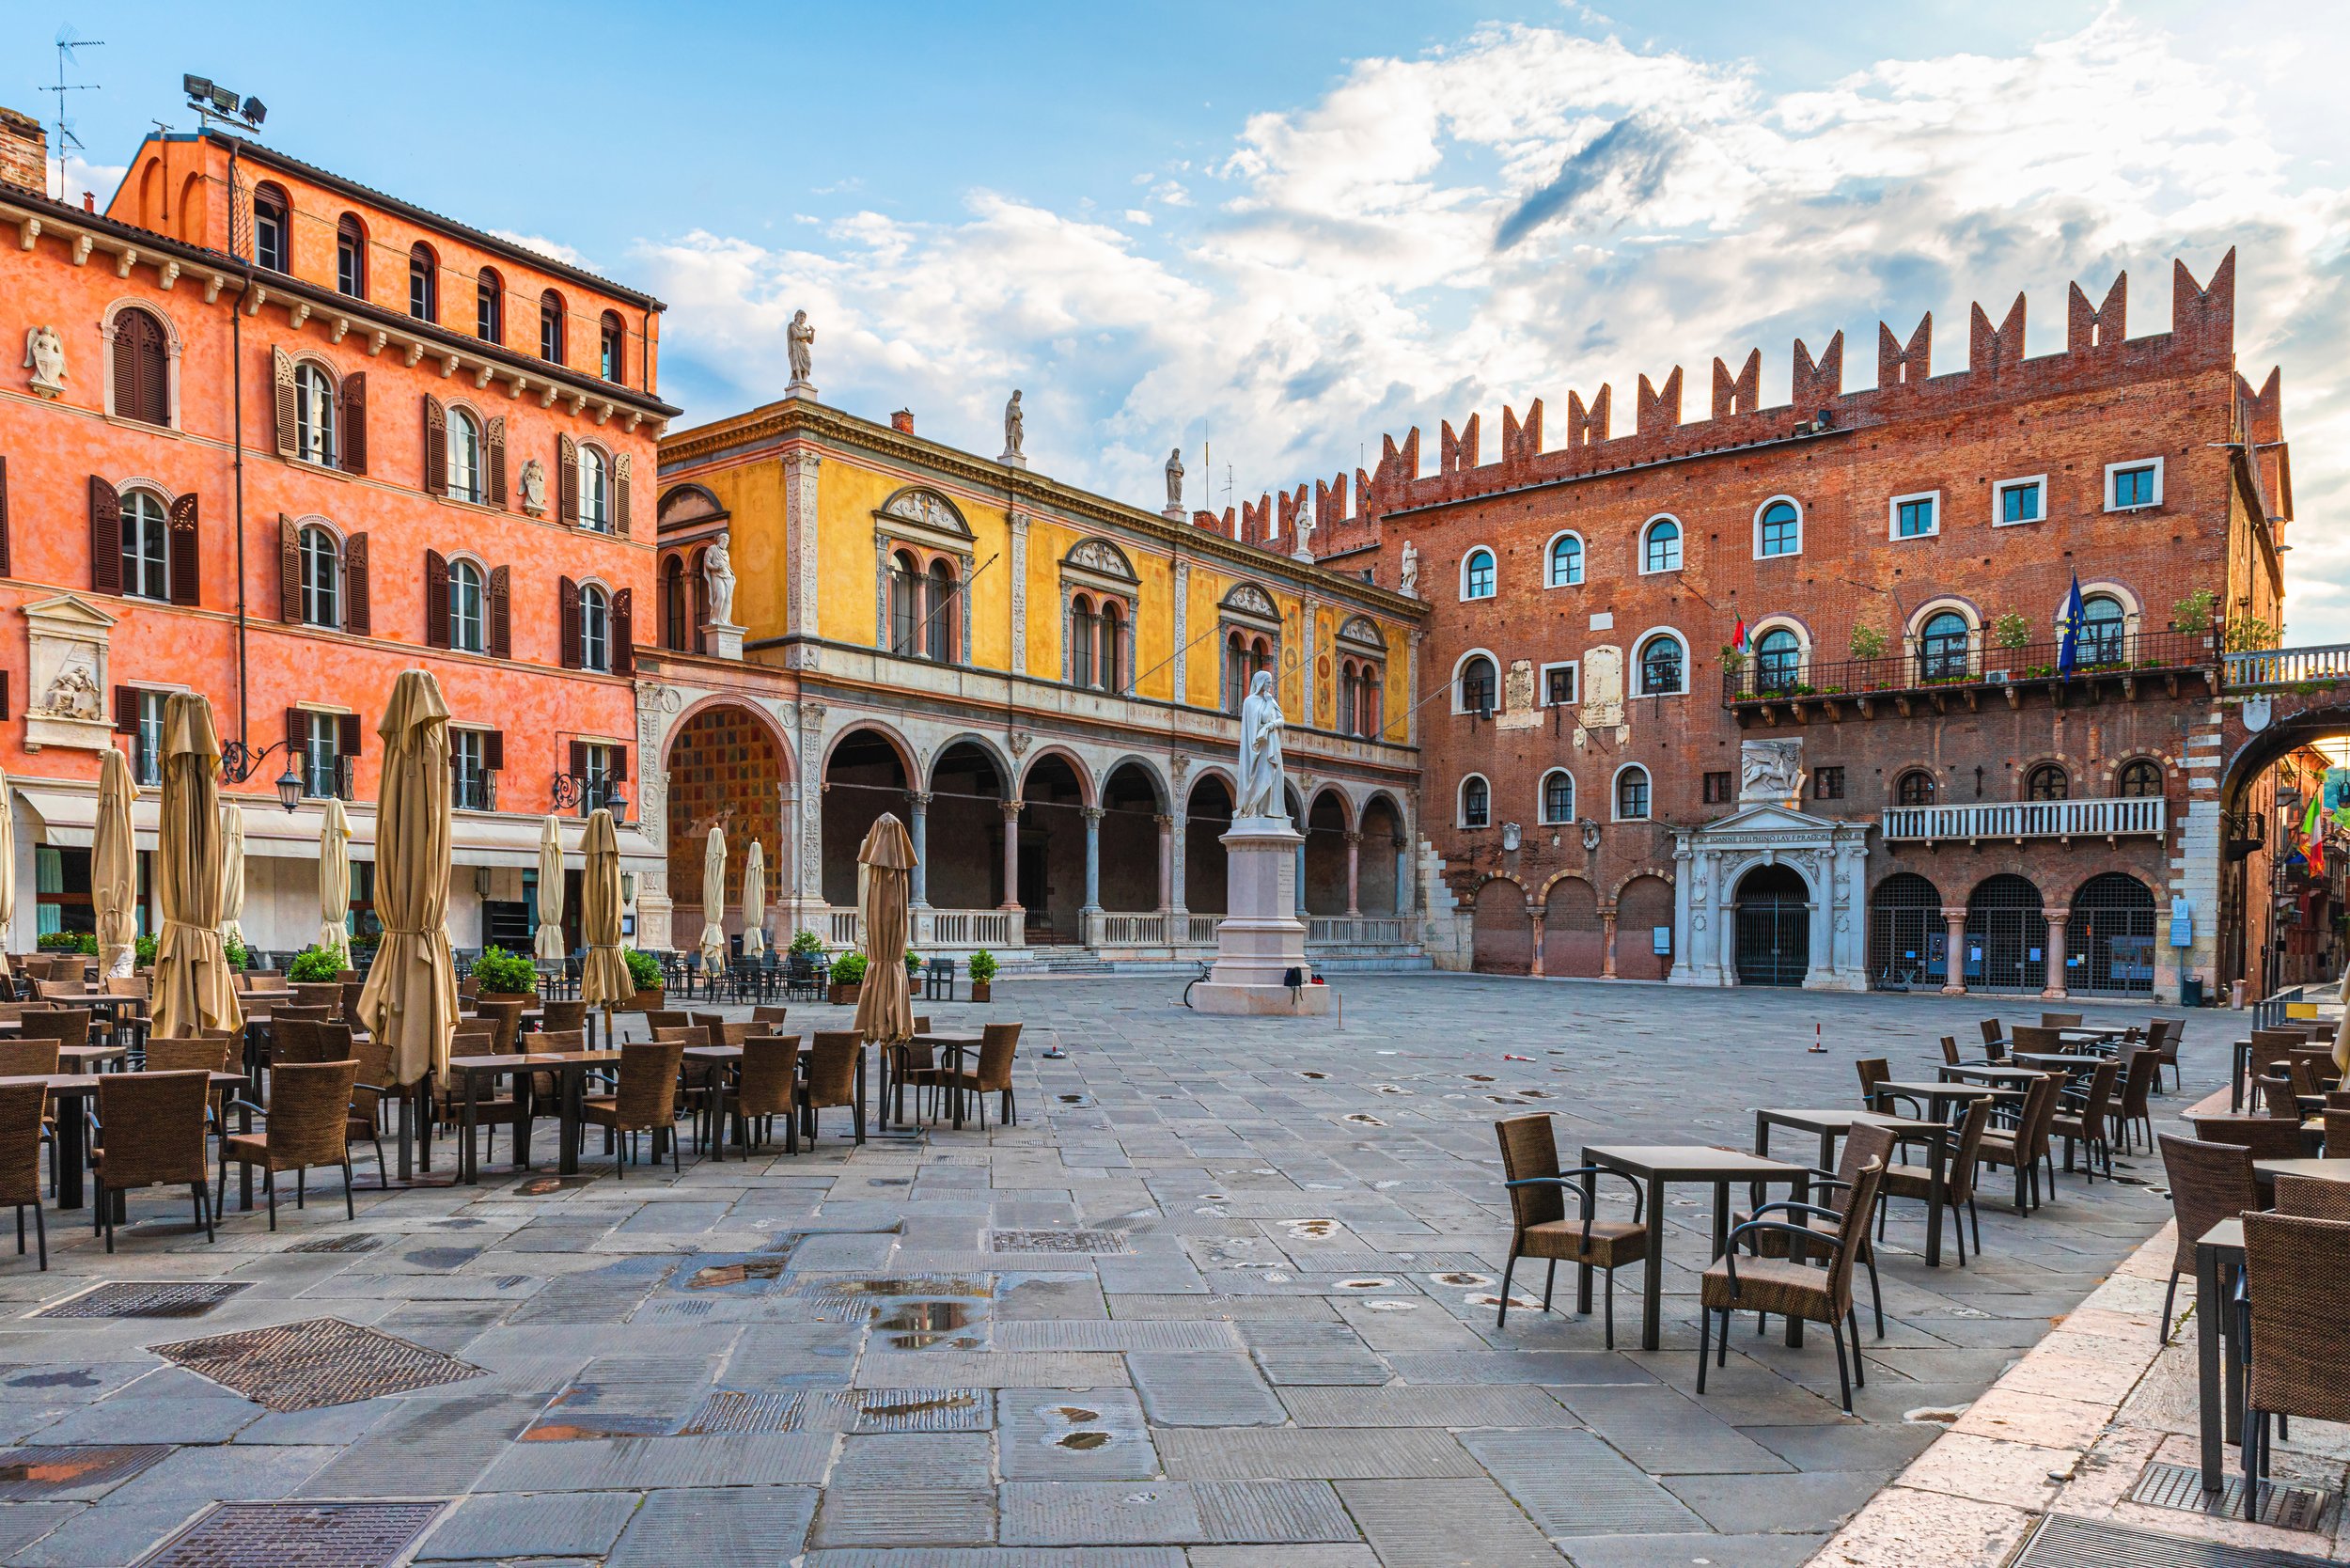 verona-old-town-square-piazza-dei-signori-with-dante-statue-street-cafe-with-nobody-veneto-italy-tourist-destination.jpg